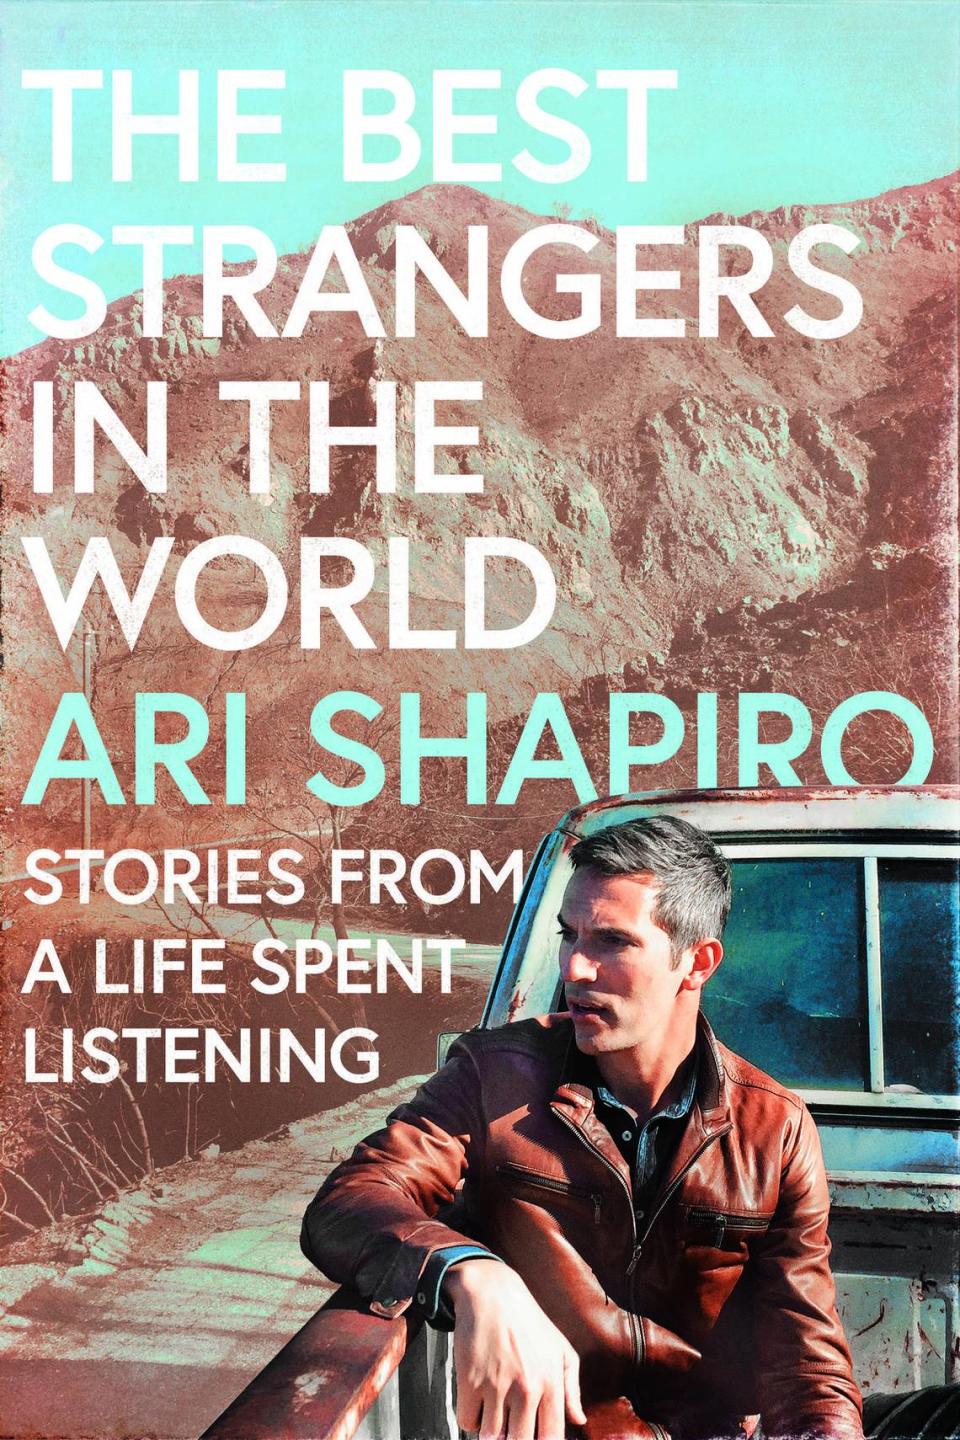 “The Best Strangers in the World” by Ari Shapiro.